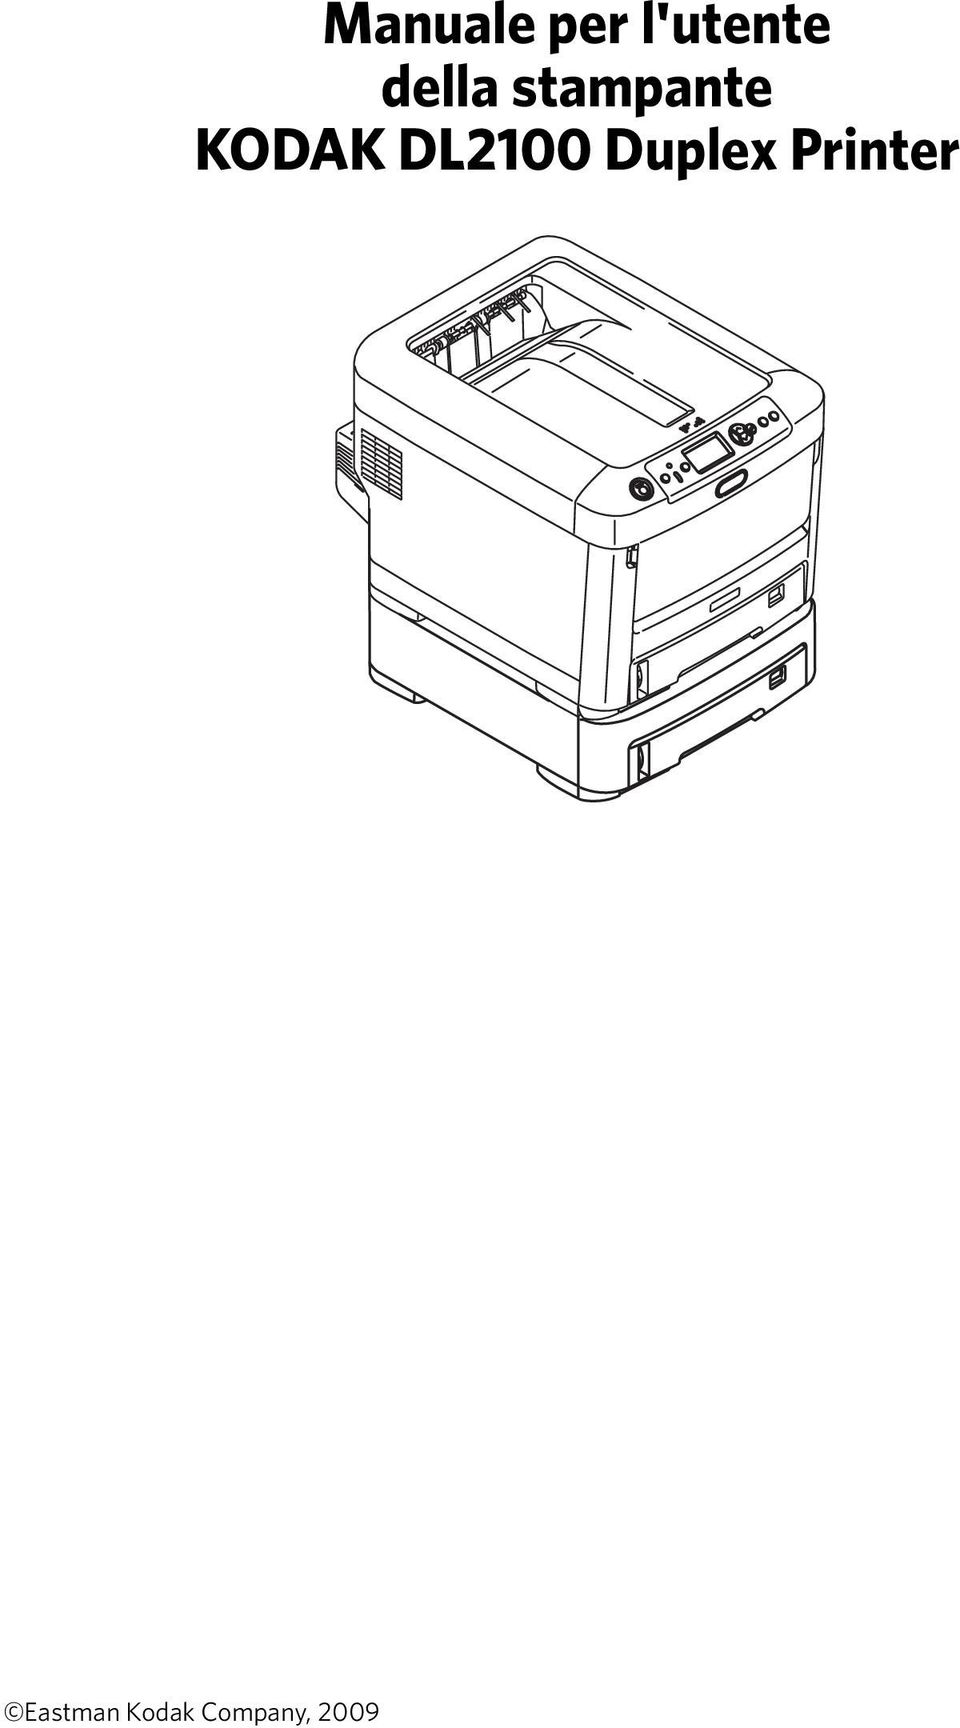 DL2100 Duplex Printer